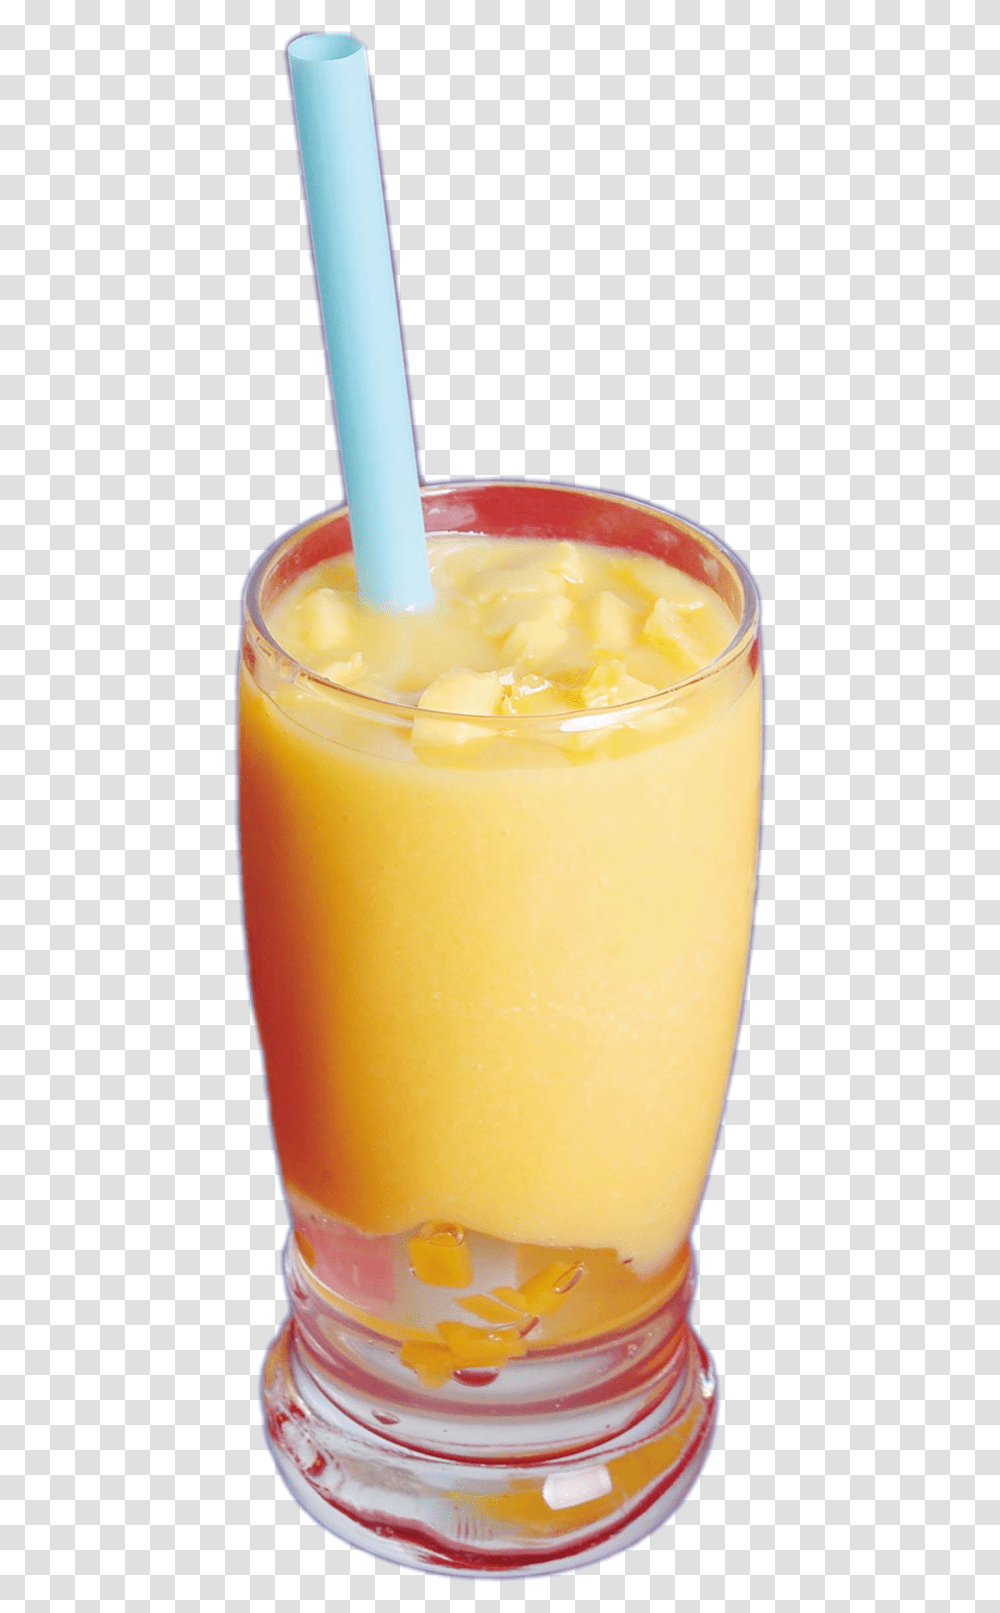 Mango Drink Orange Juice, Beverage, Smoothie, Beer, Alcohol Transparent Png